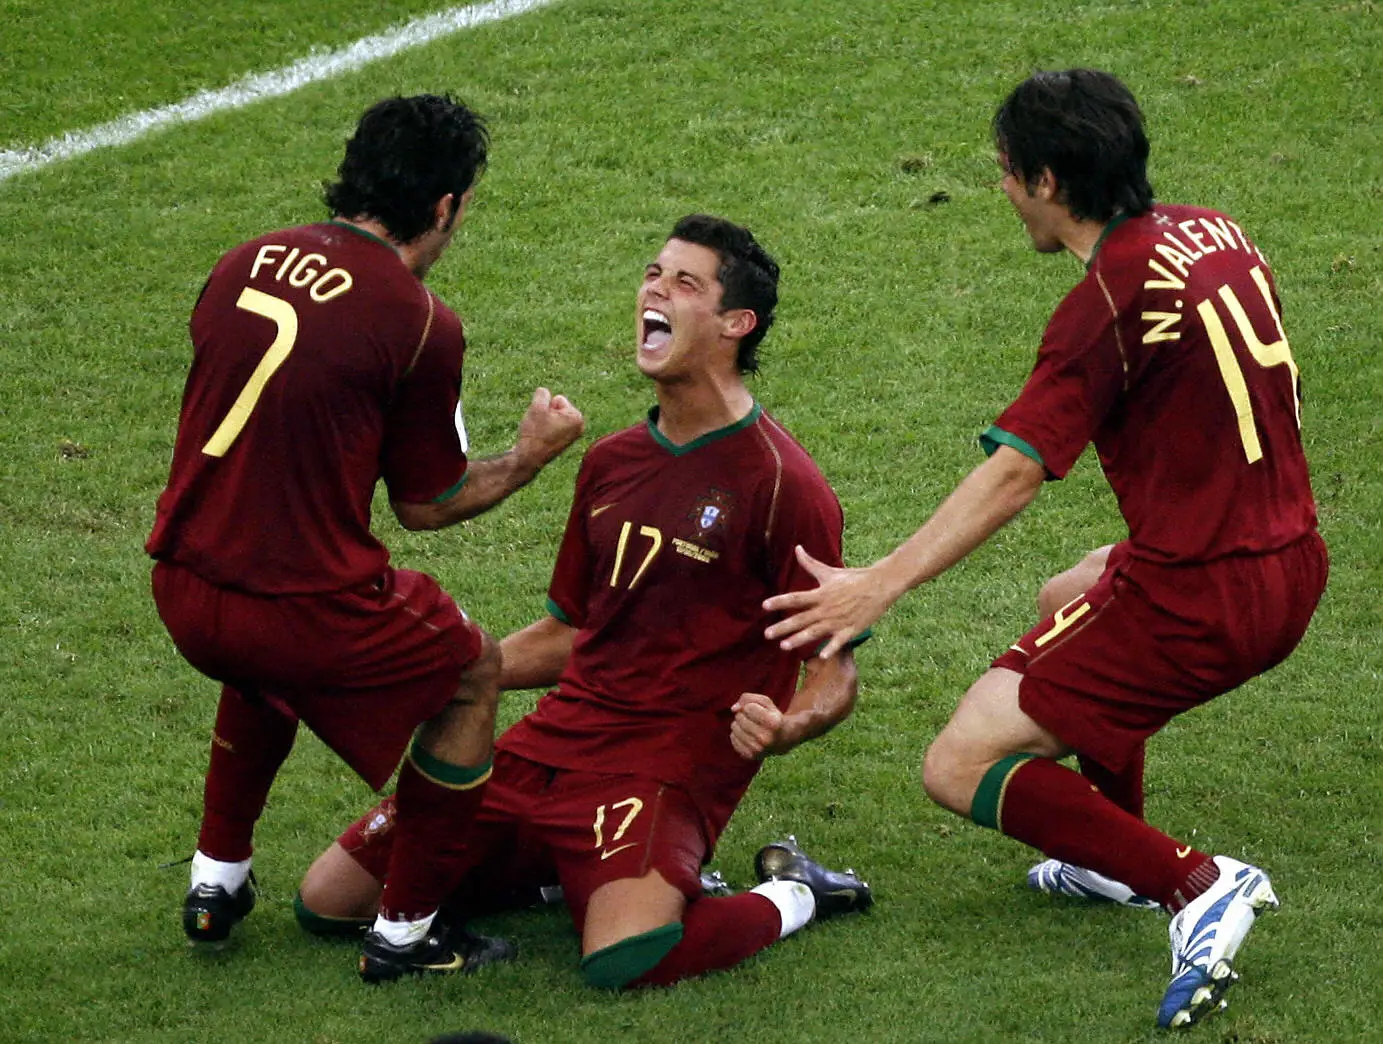 Quase 2,4 milhões de pessoas assistiram à vitória de Portugal na estreia no  Mundial de futebol – ECO